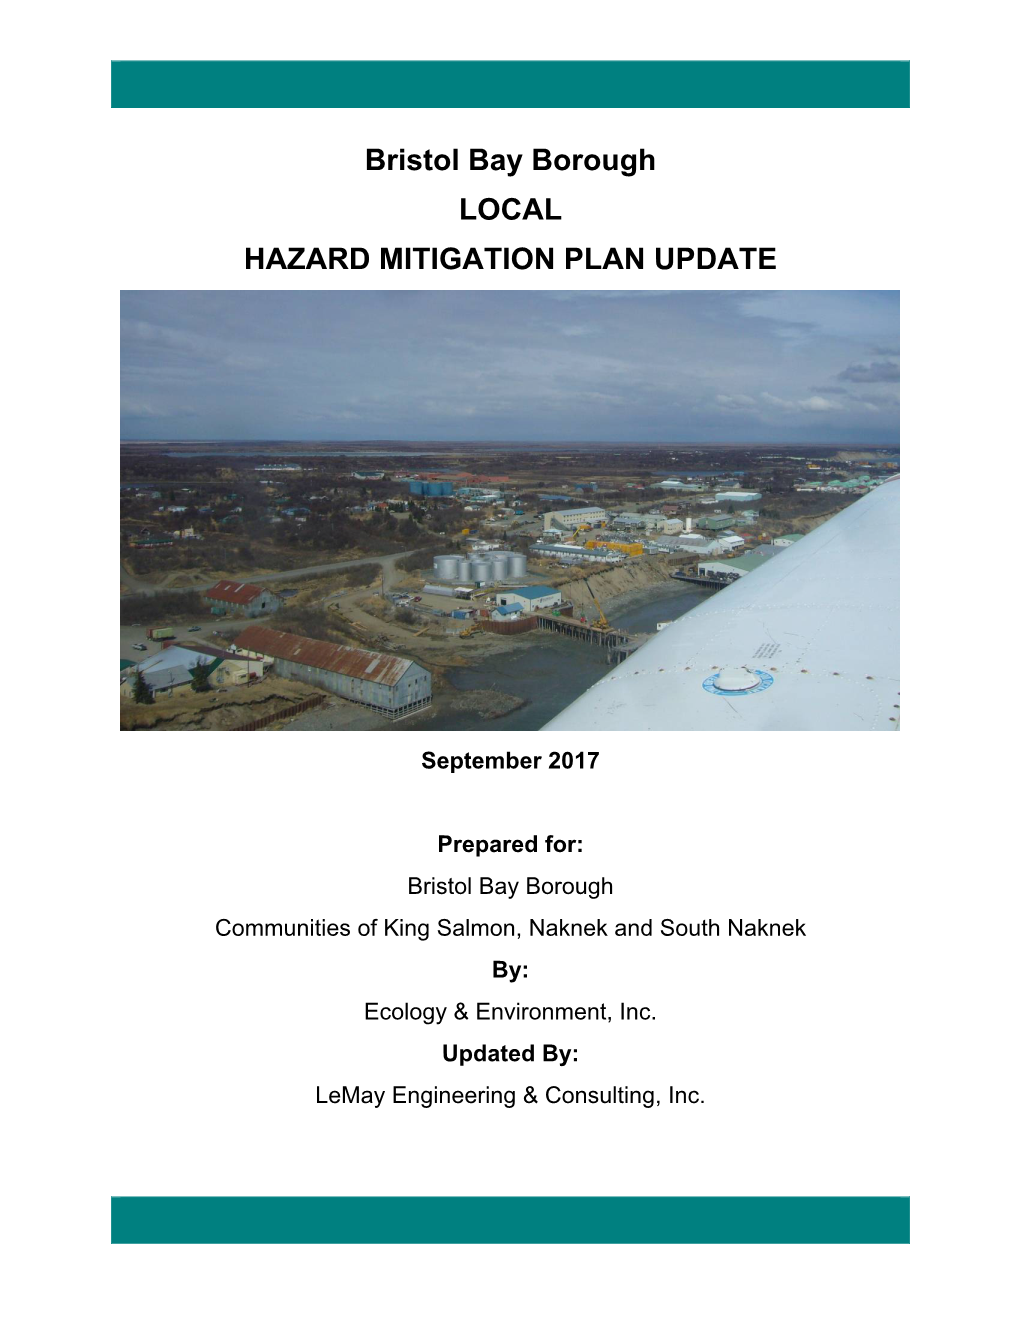 Bristol Bay Borough LOCAL HAZARD MITIGATION PLAN UPDATE